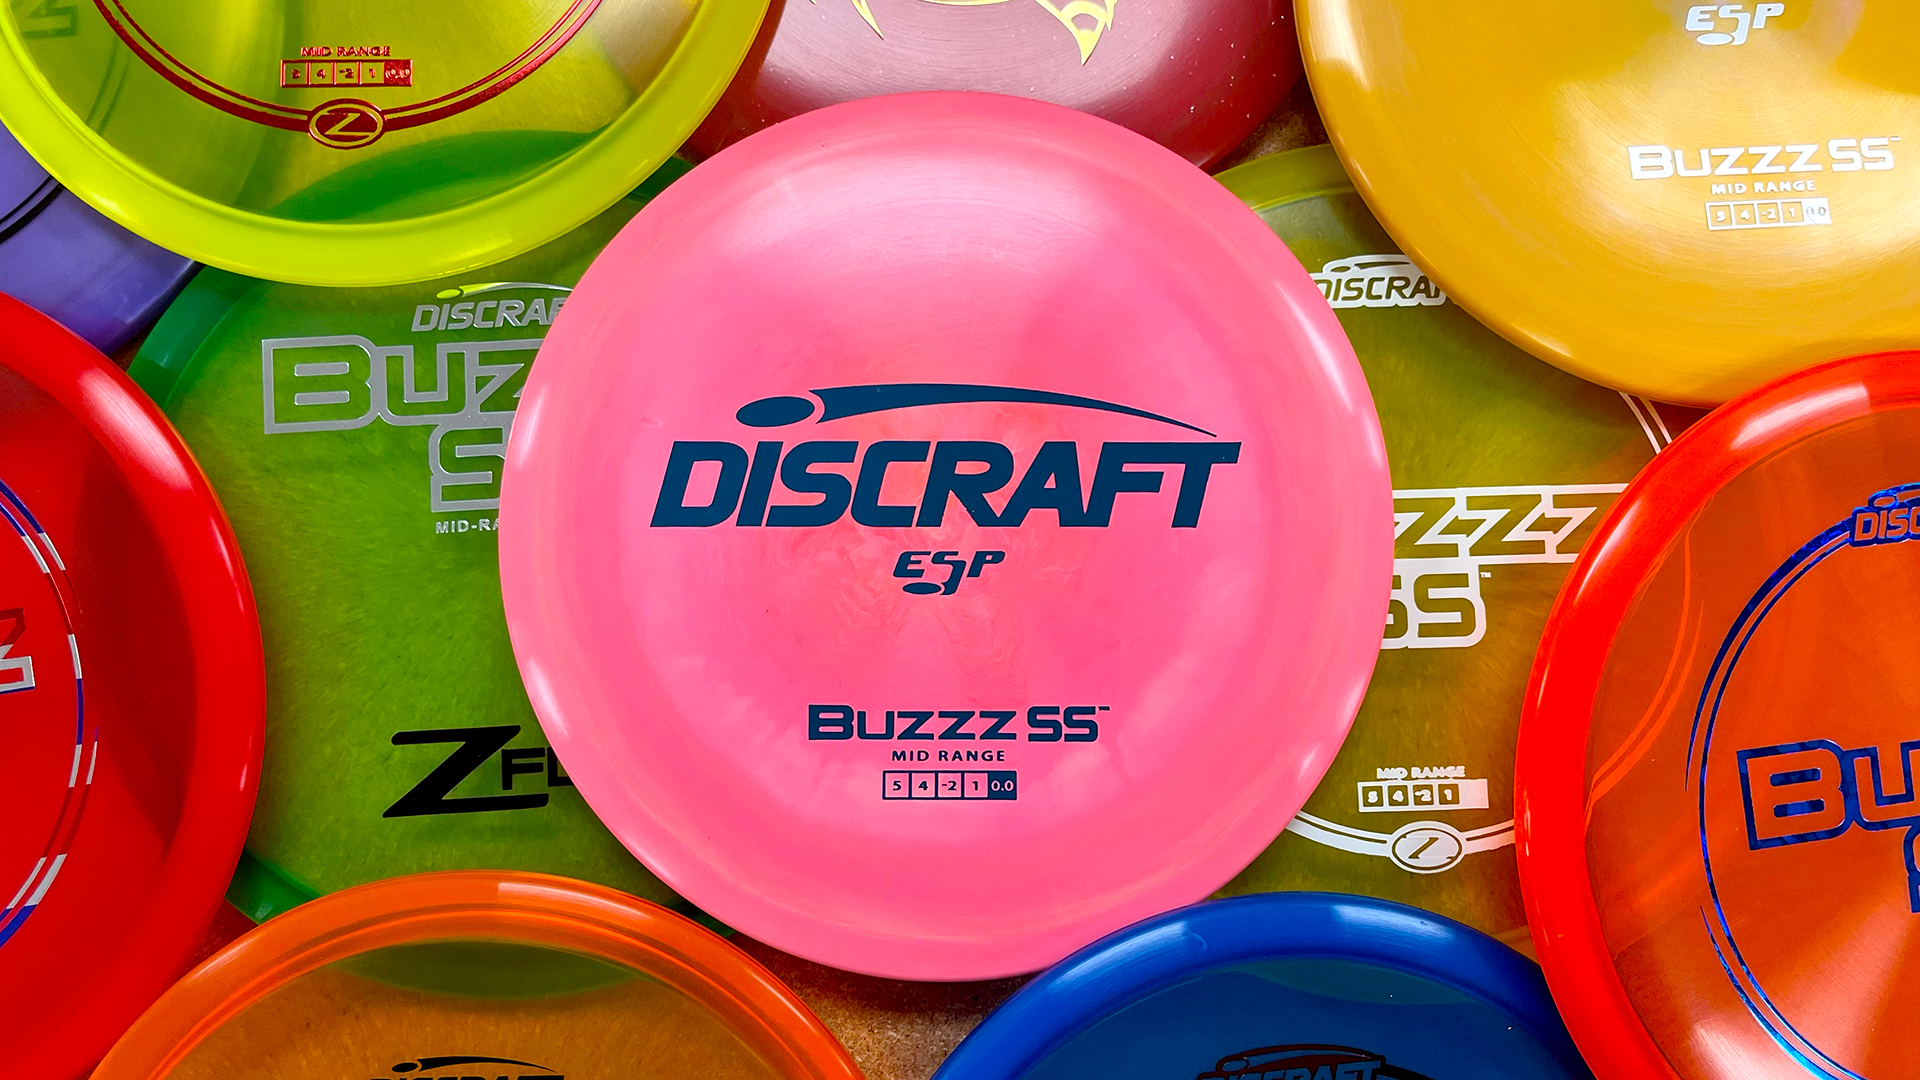 Discraft BuzzzSS